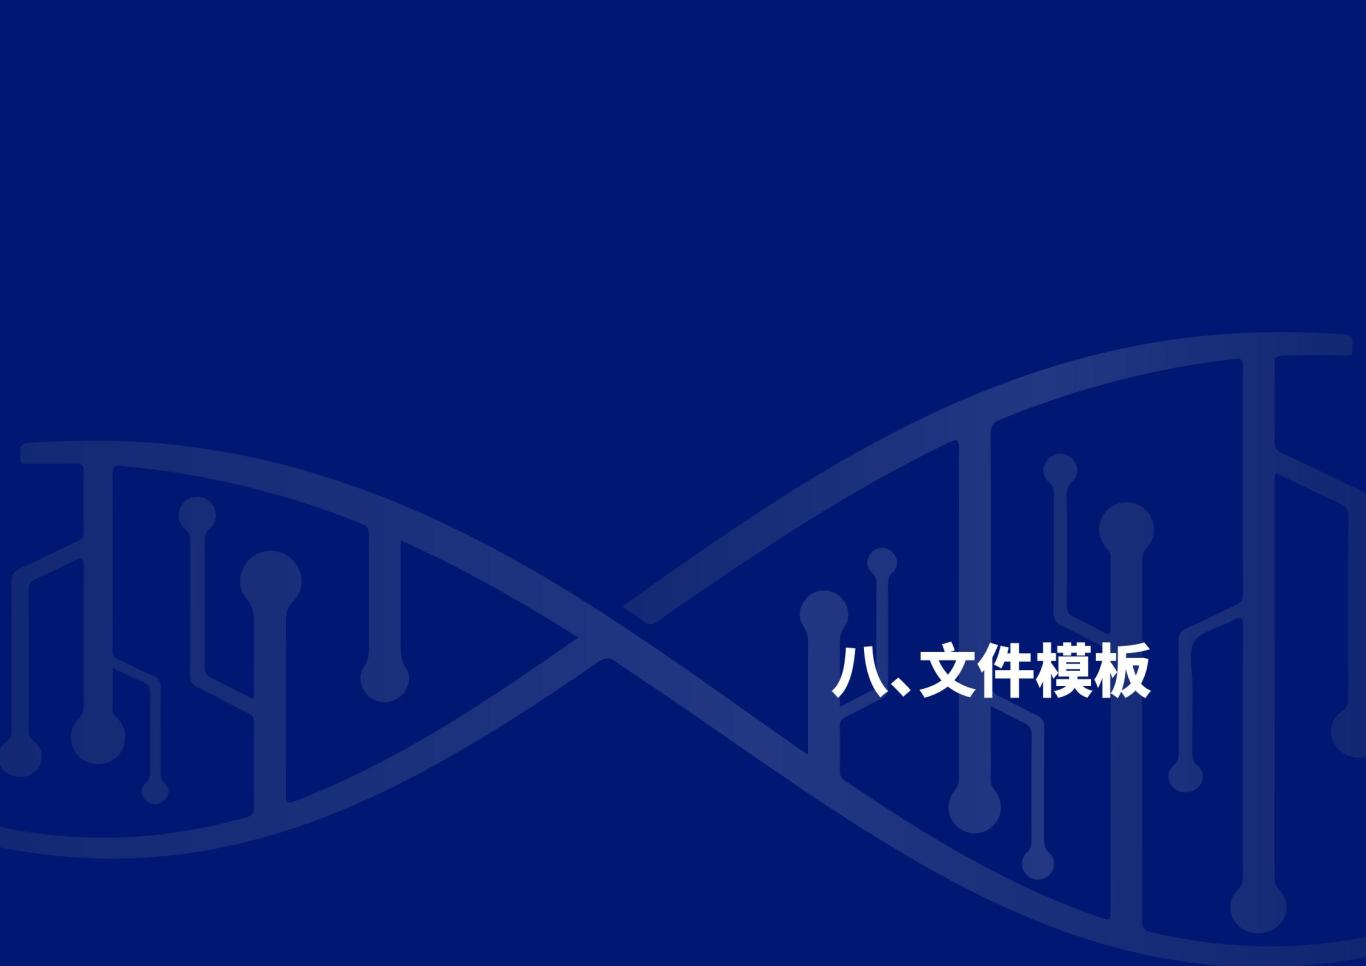 深圳合成生物学创新研究院品牌设计规范图36